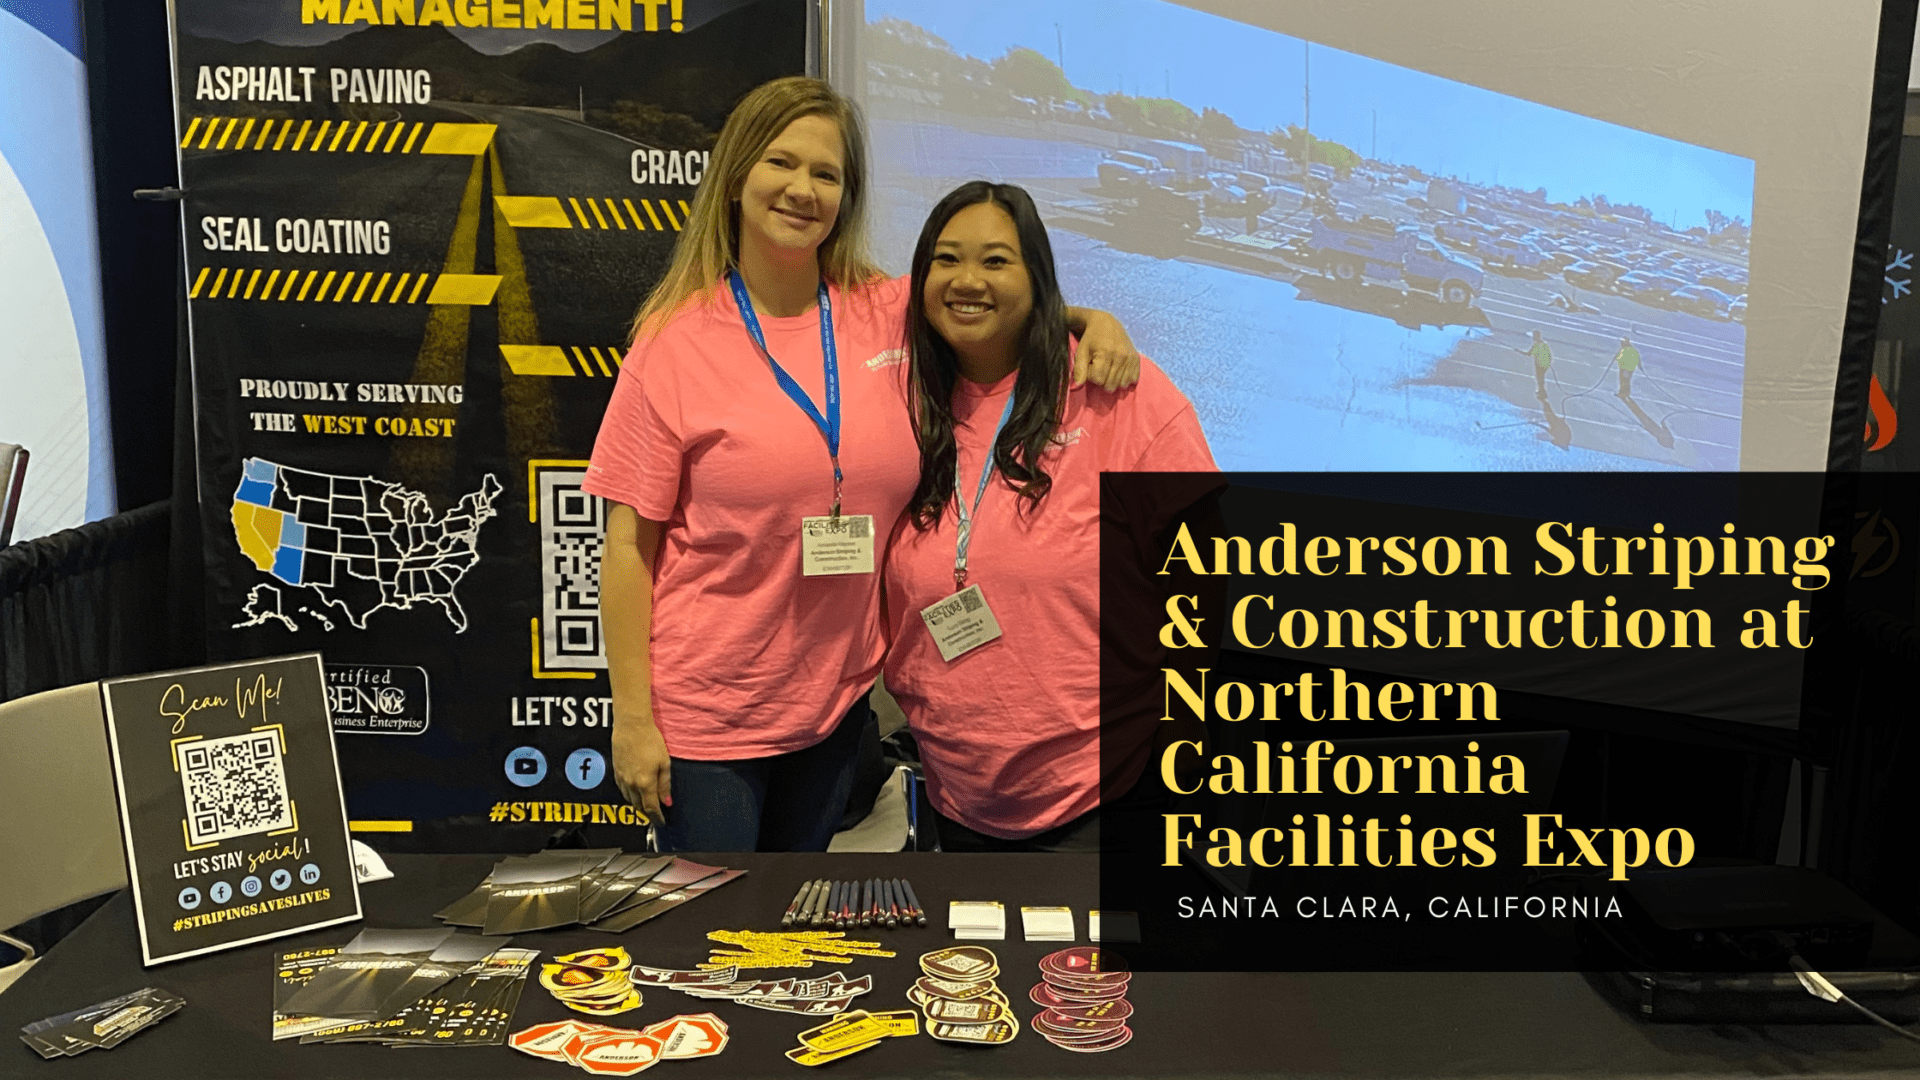 Anderson Striping & Construction at Northern California Facilities Expo